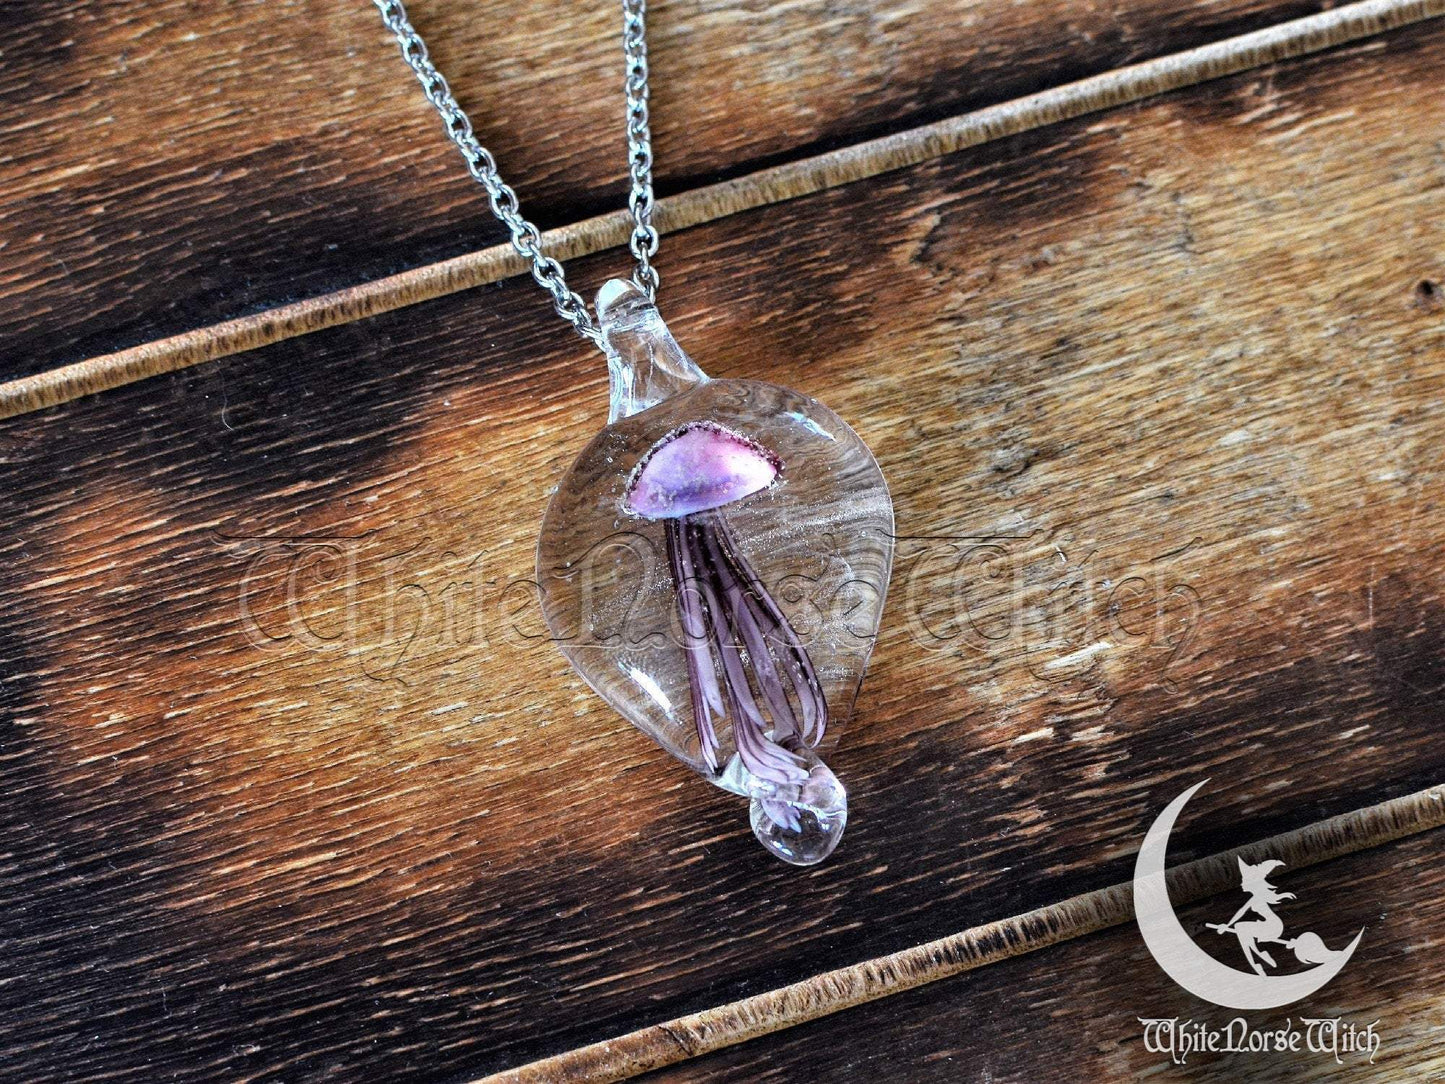 Glass Jellyfish Necklace, Purple Glowing Jellyfish Pendant TheNorseWind